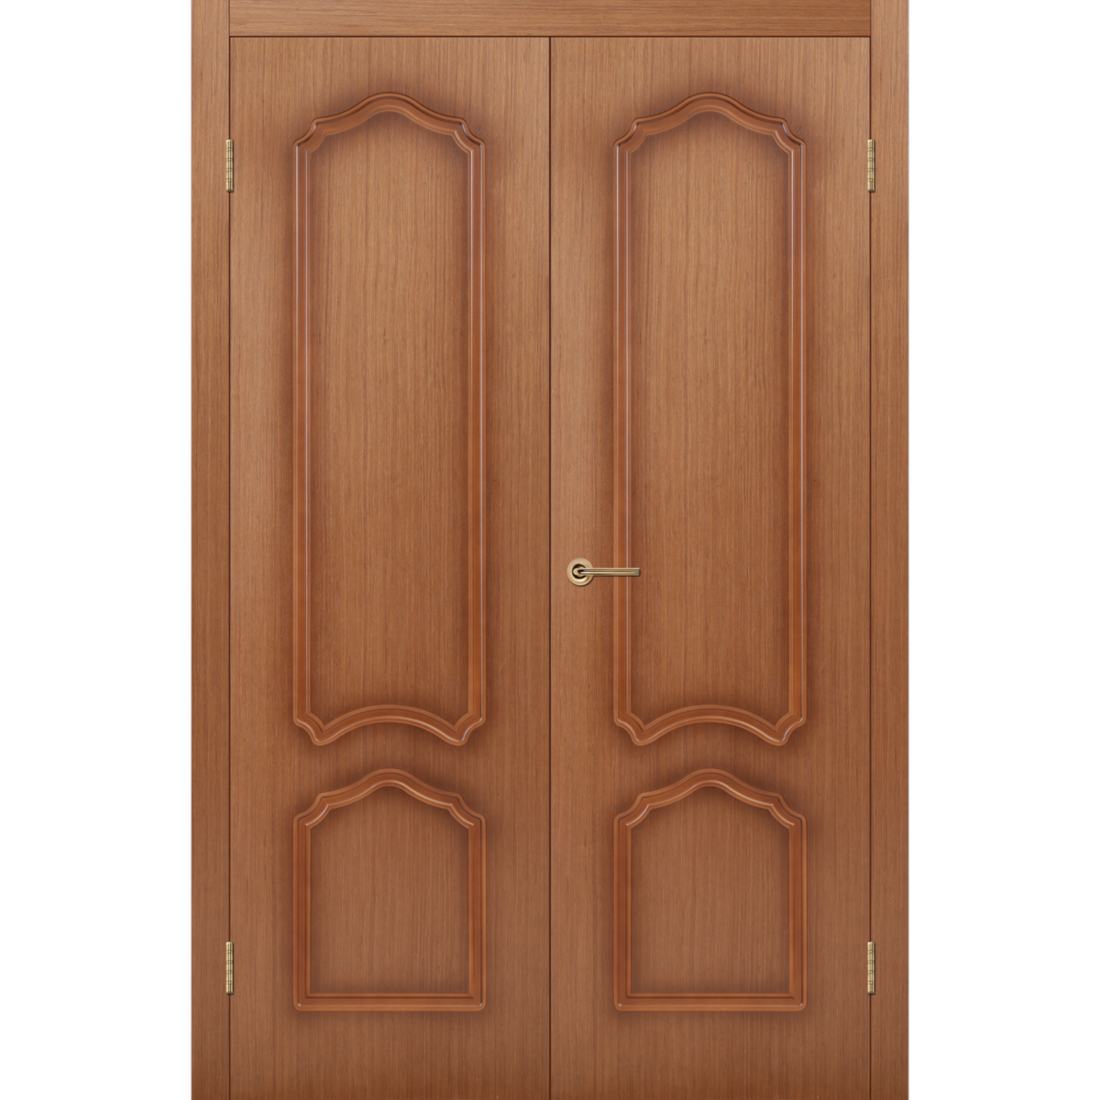 Межкомнатная дверь, Румакс, Соната, Орех, Распашная, Двустворчатая, 1200 (600+600) х 2000 мм